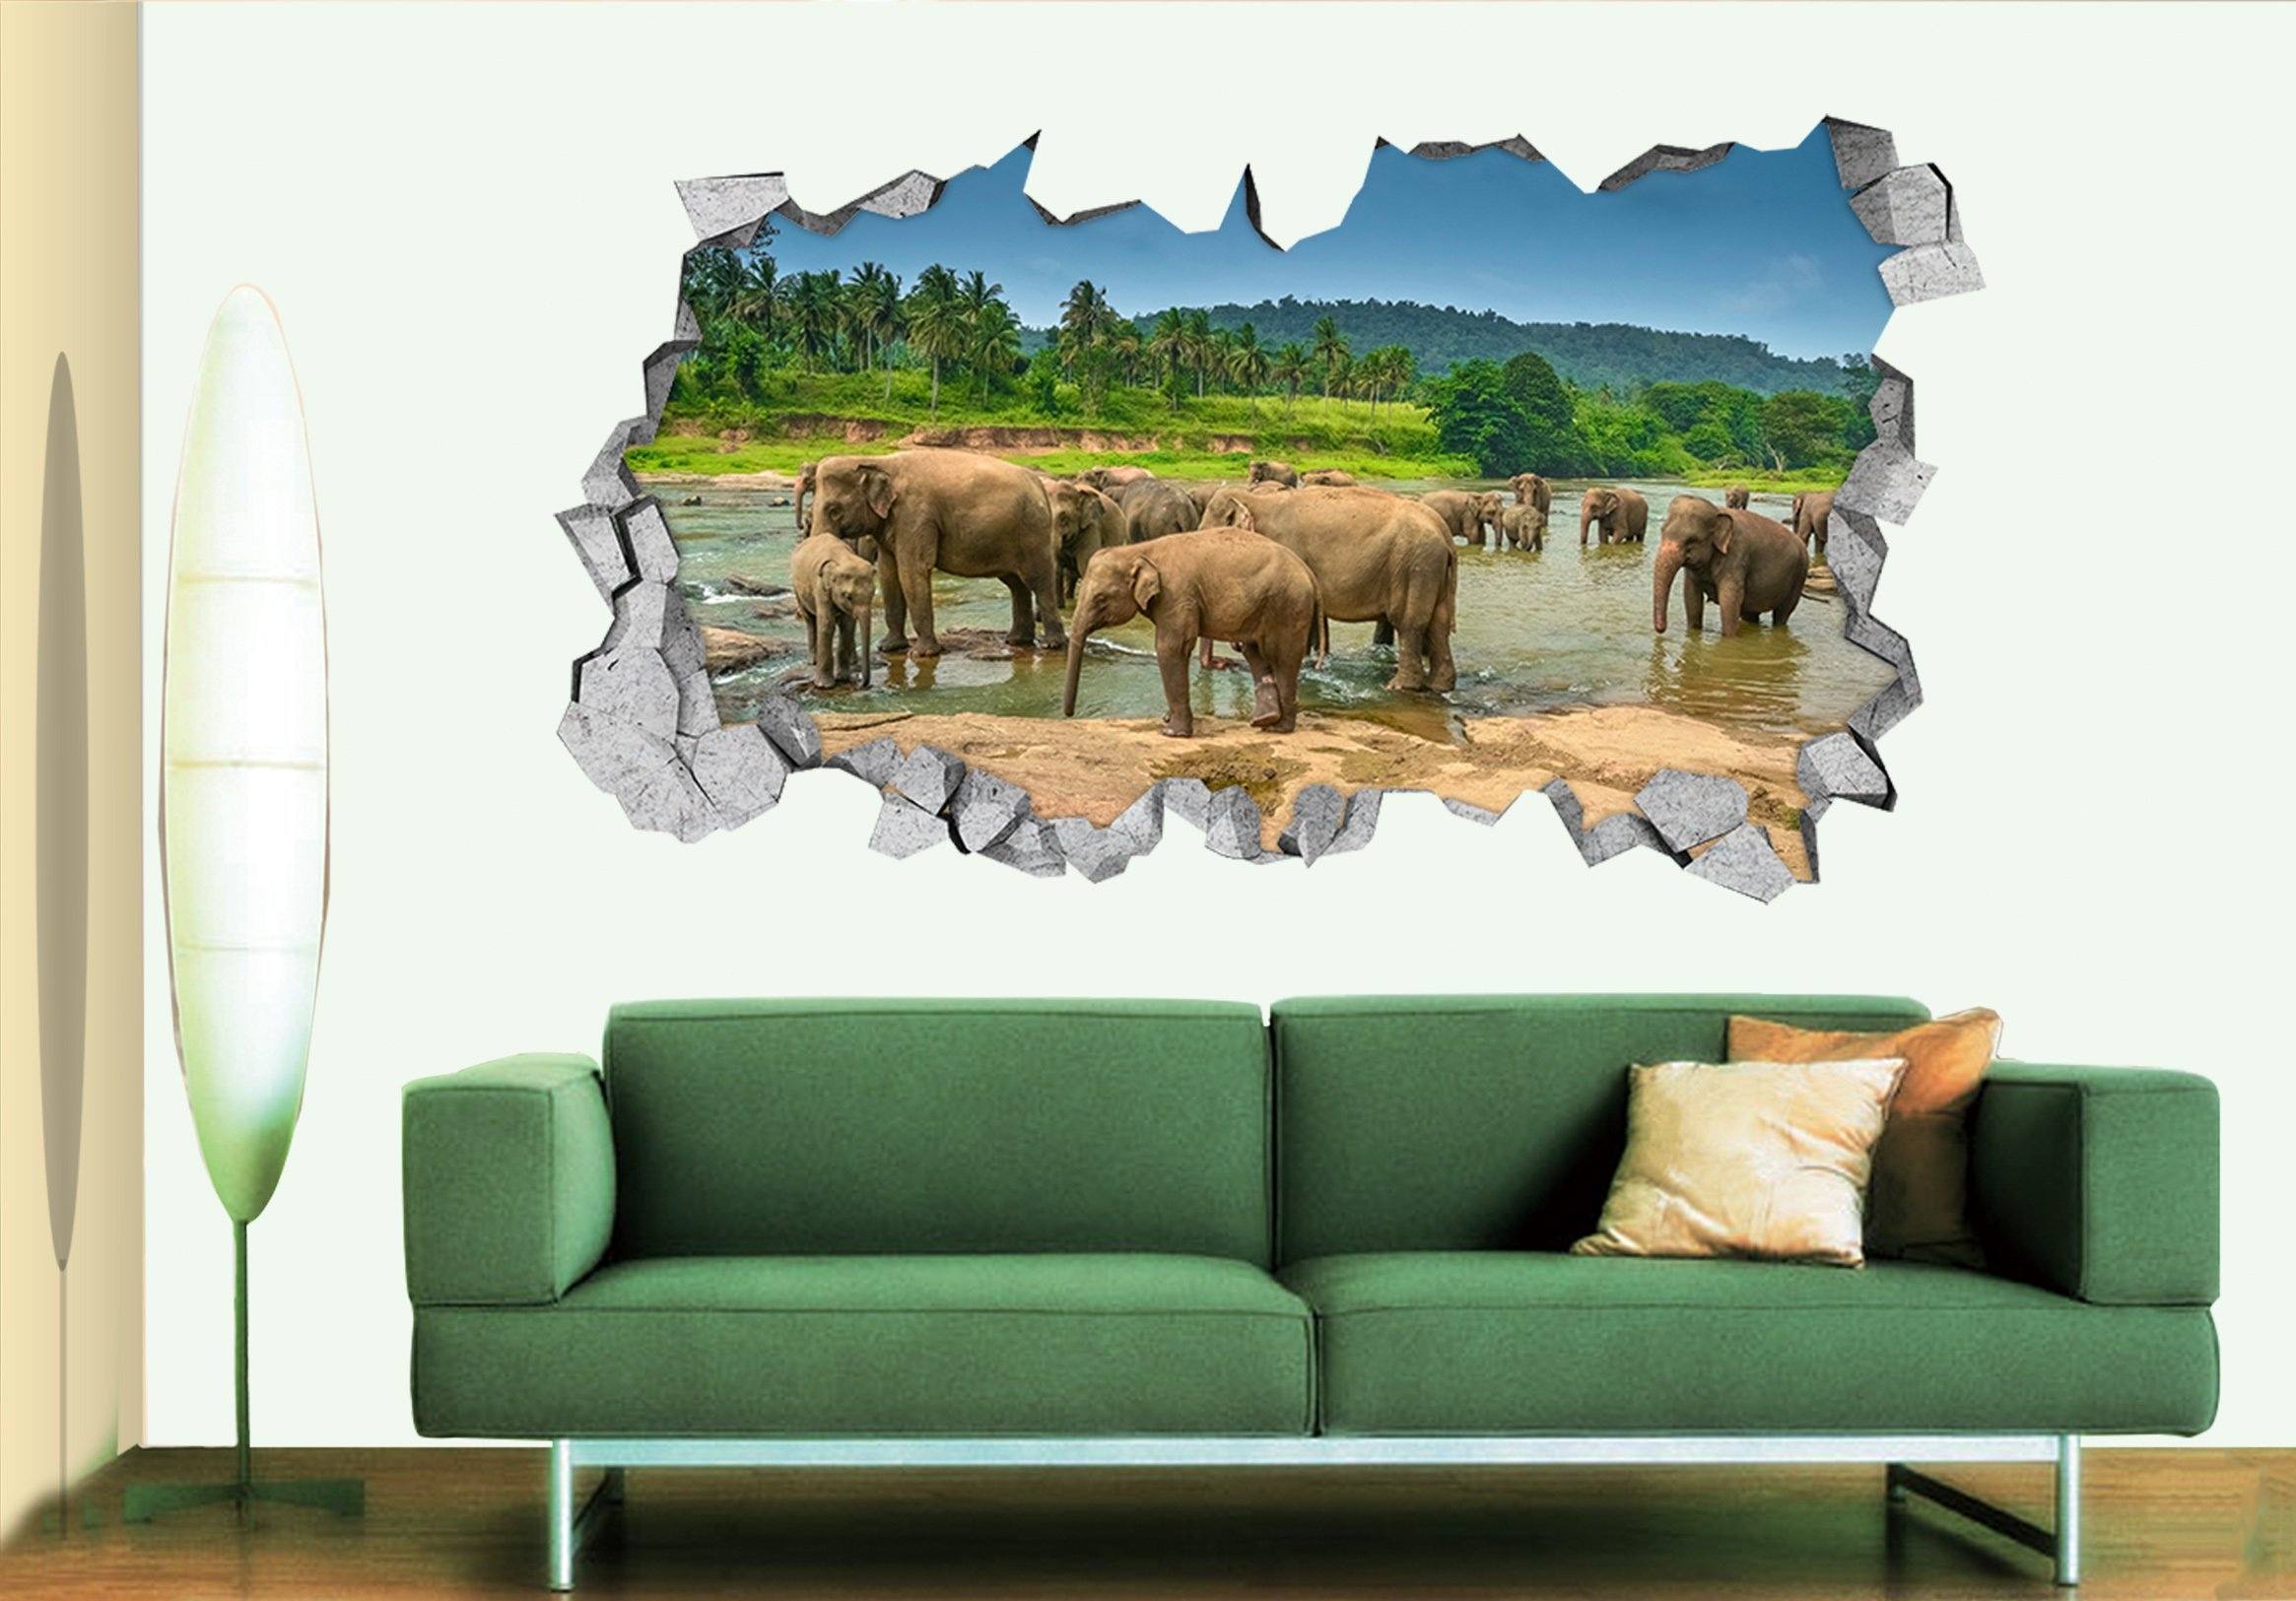 3D River Elephants 302 Broken Wall Murals Wallpaper AJ Wallpaper 